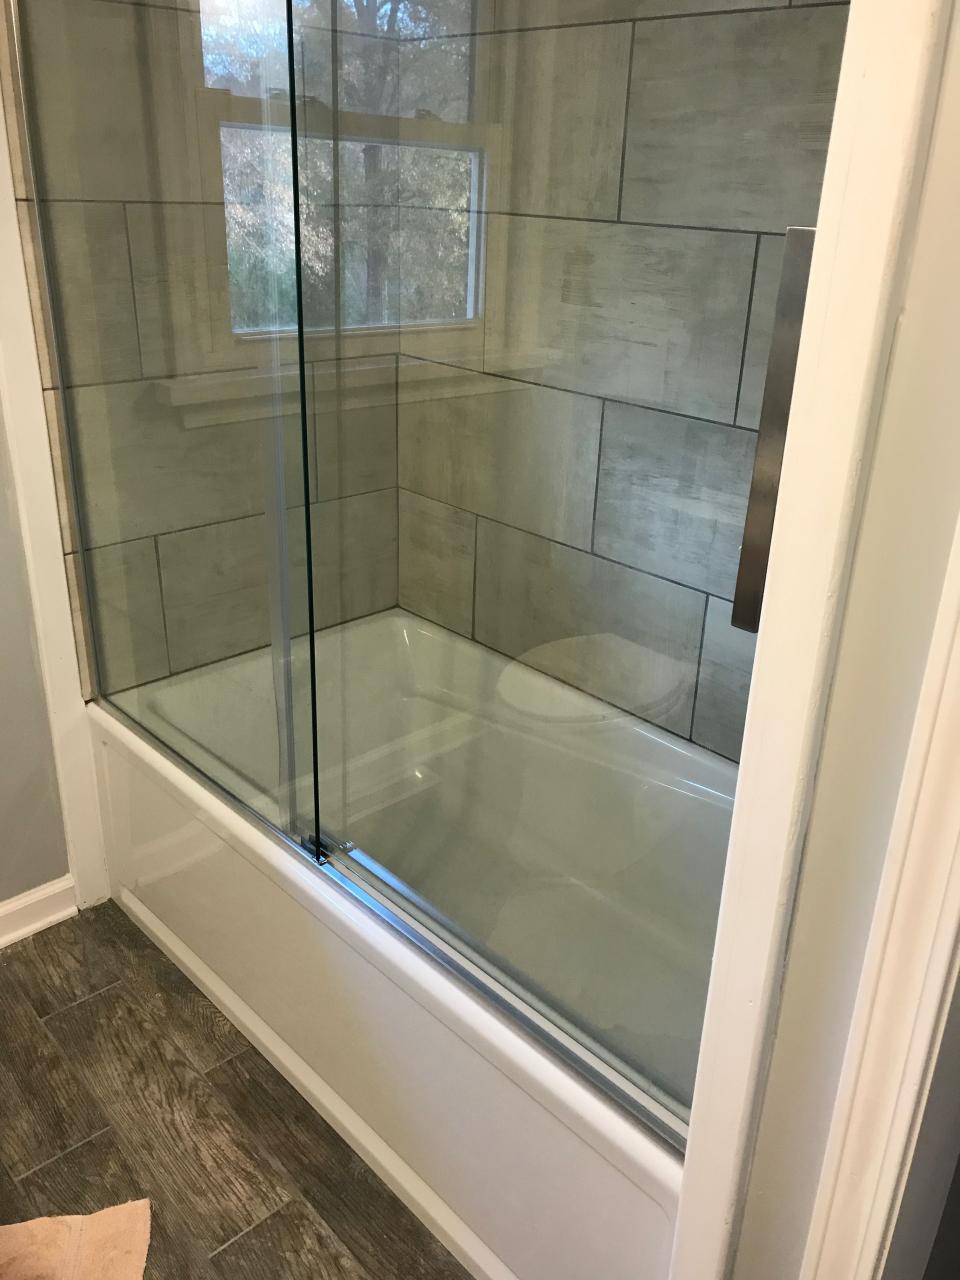 Deep soaker tub. Rolling shower doors. Large tiled shower. Bathrooms